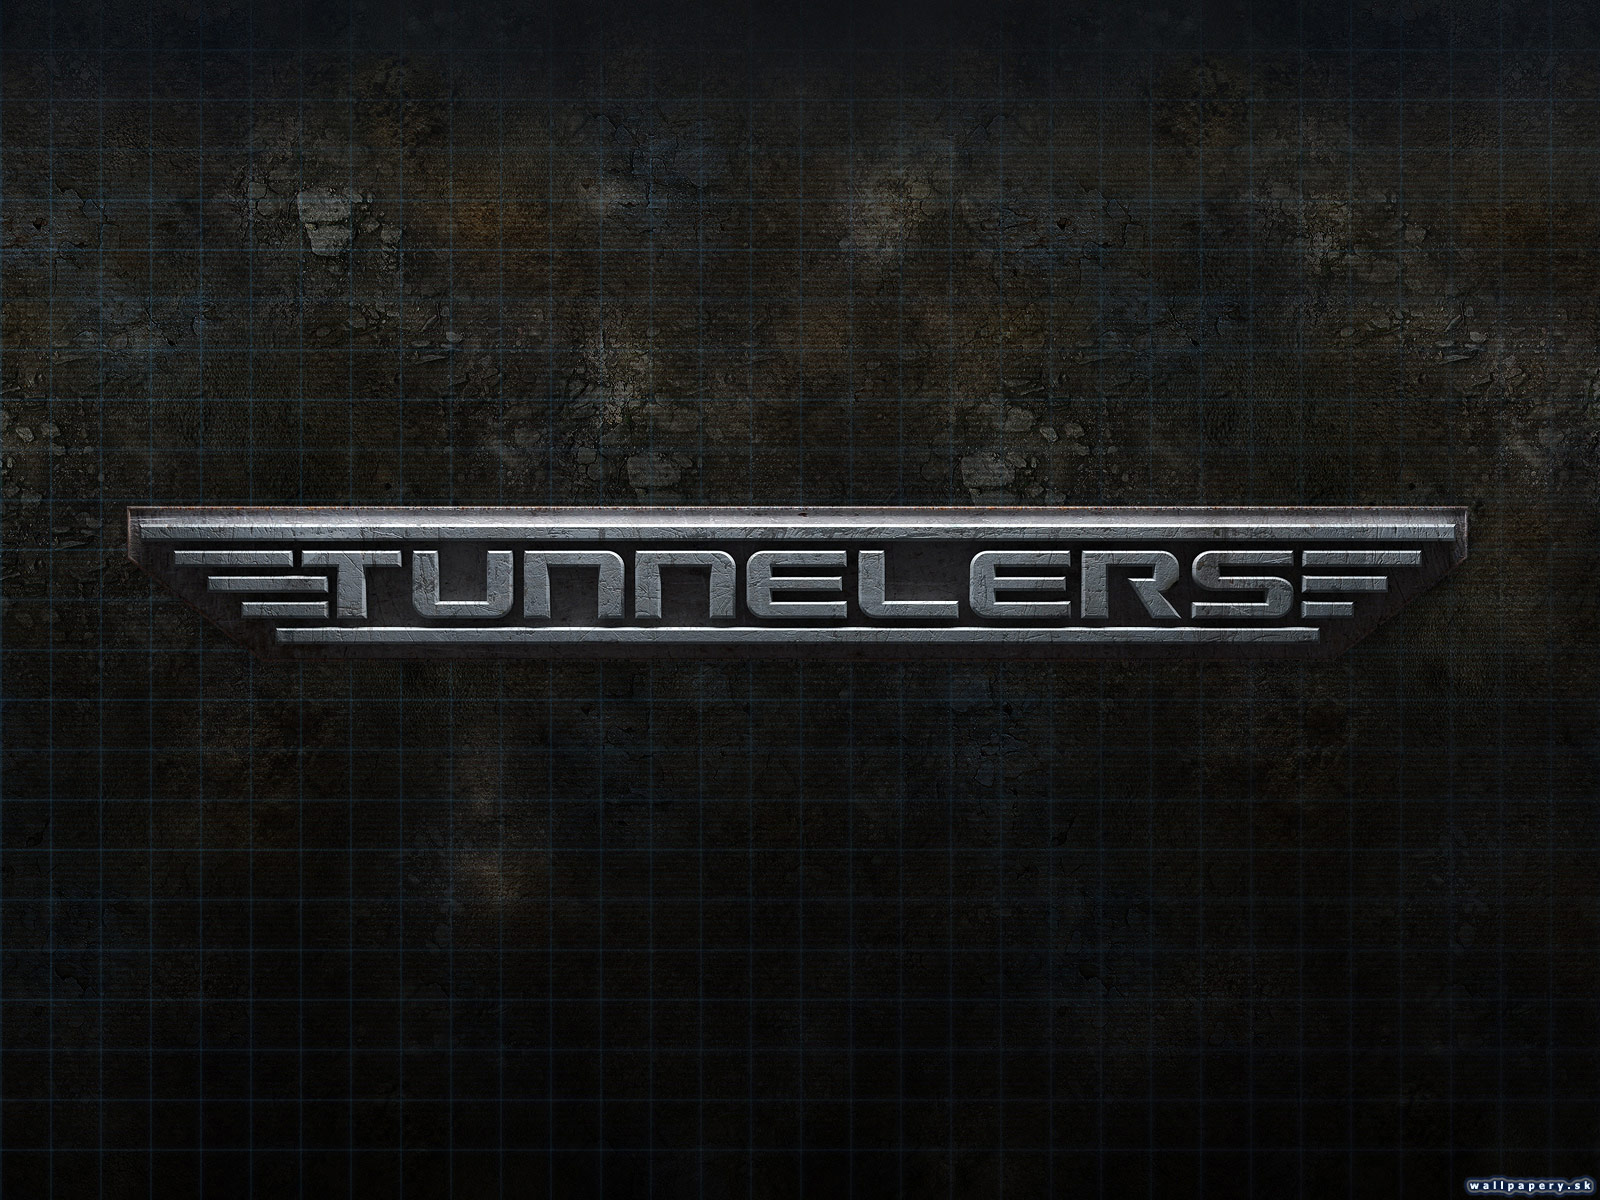 Tunnelers - wallpaper 2